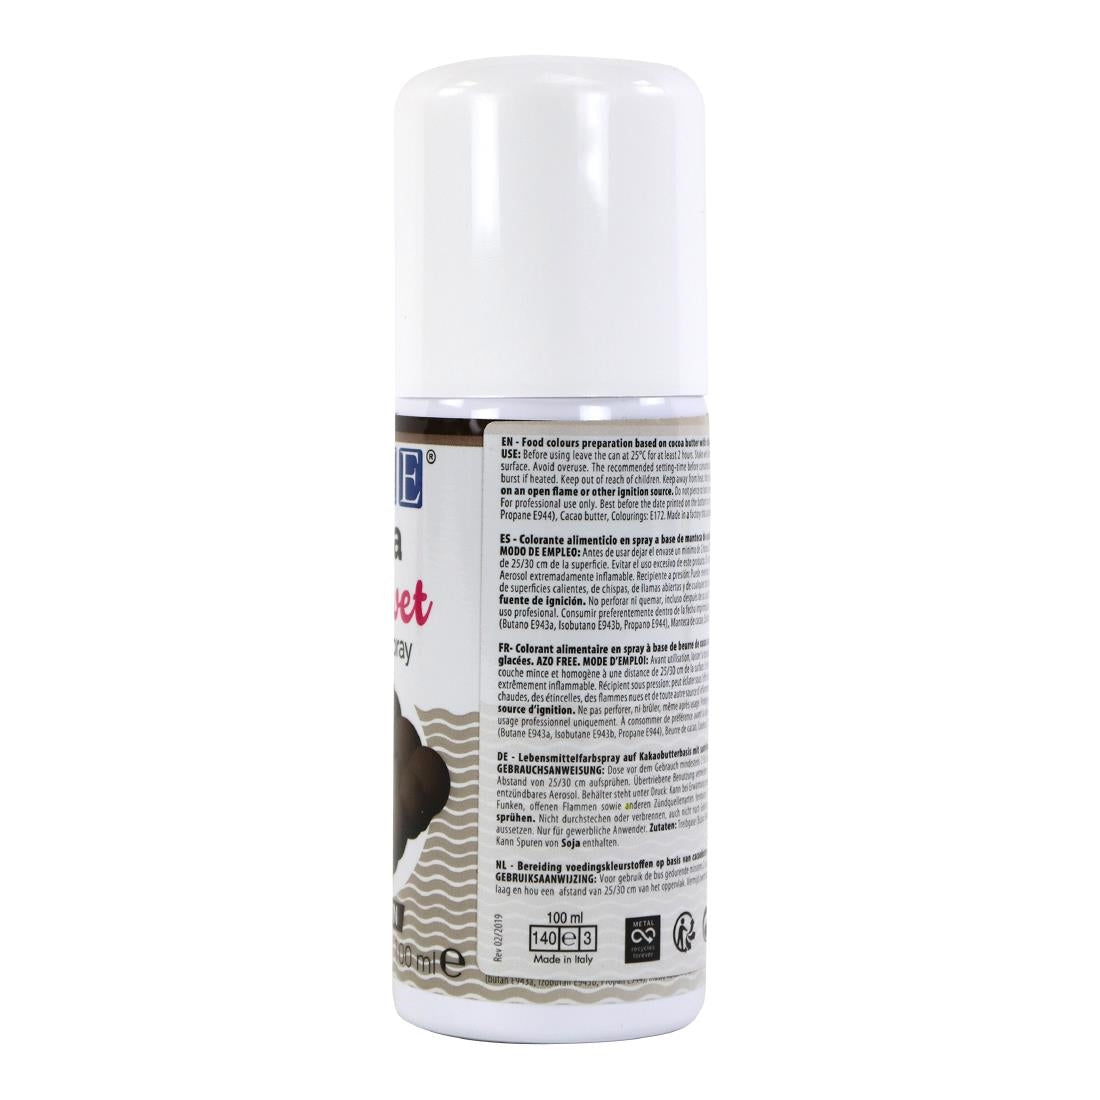 HU206 PME Cocoa Velvet Spray 100ml - Brown